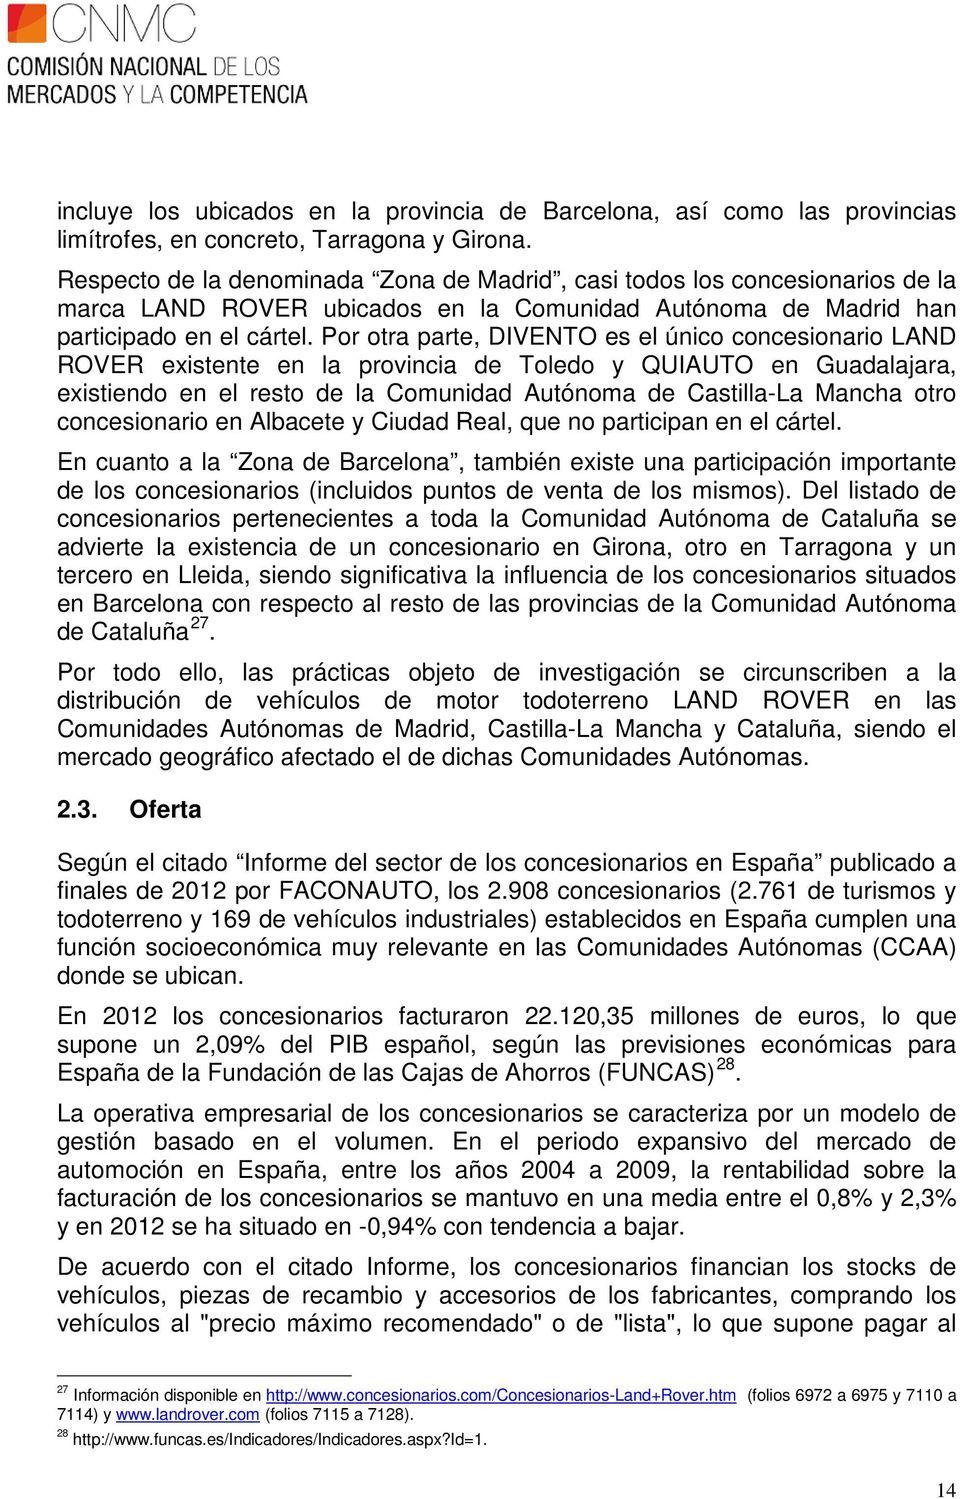 Por otra parte, DIVENTO es el único concesionario LAND ROVER existente en la provincia de Toledo y QUIAUTO en Guadalajara, existiendo en el resto de la Comunidad Autónoma de Castilla-La Mancha otro